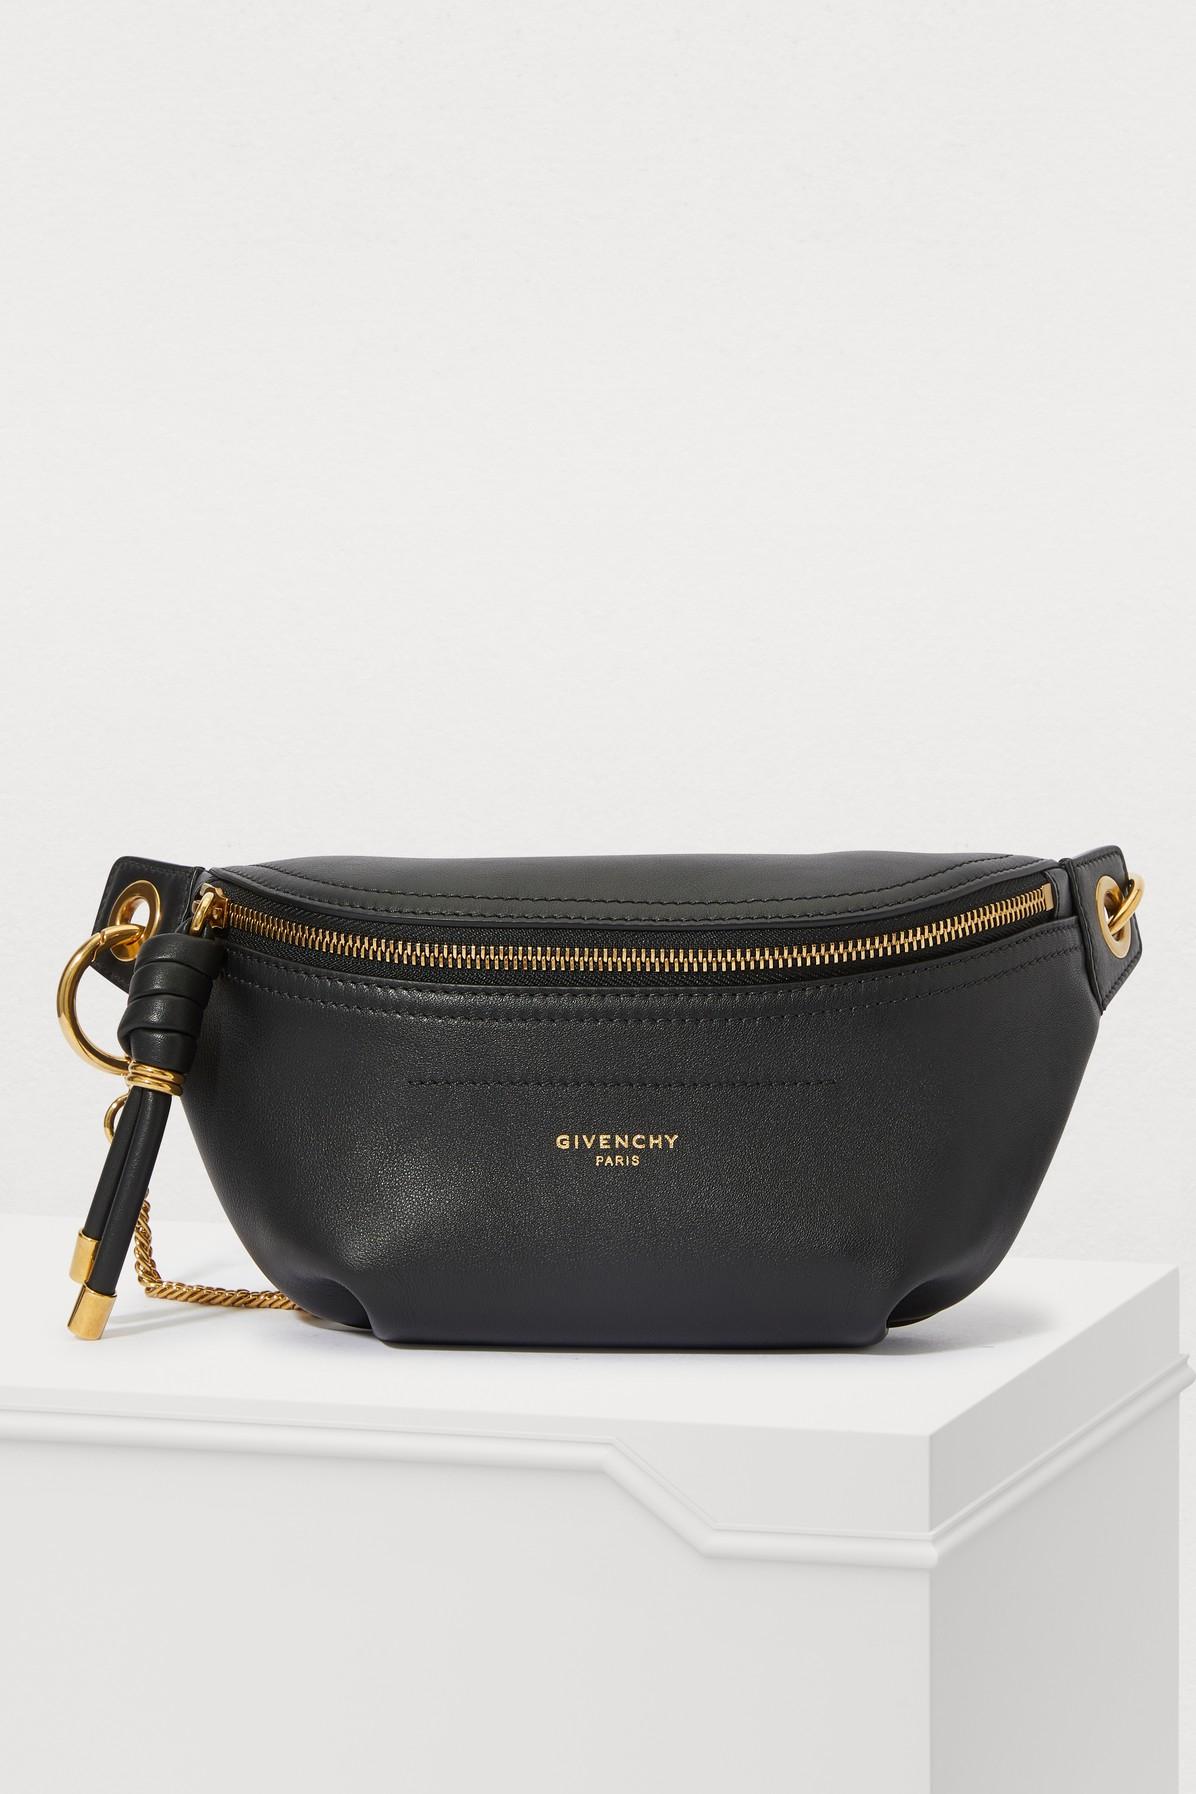 Givenchy Whip Belt-bag in Black - Lyst